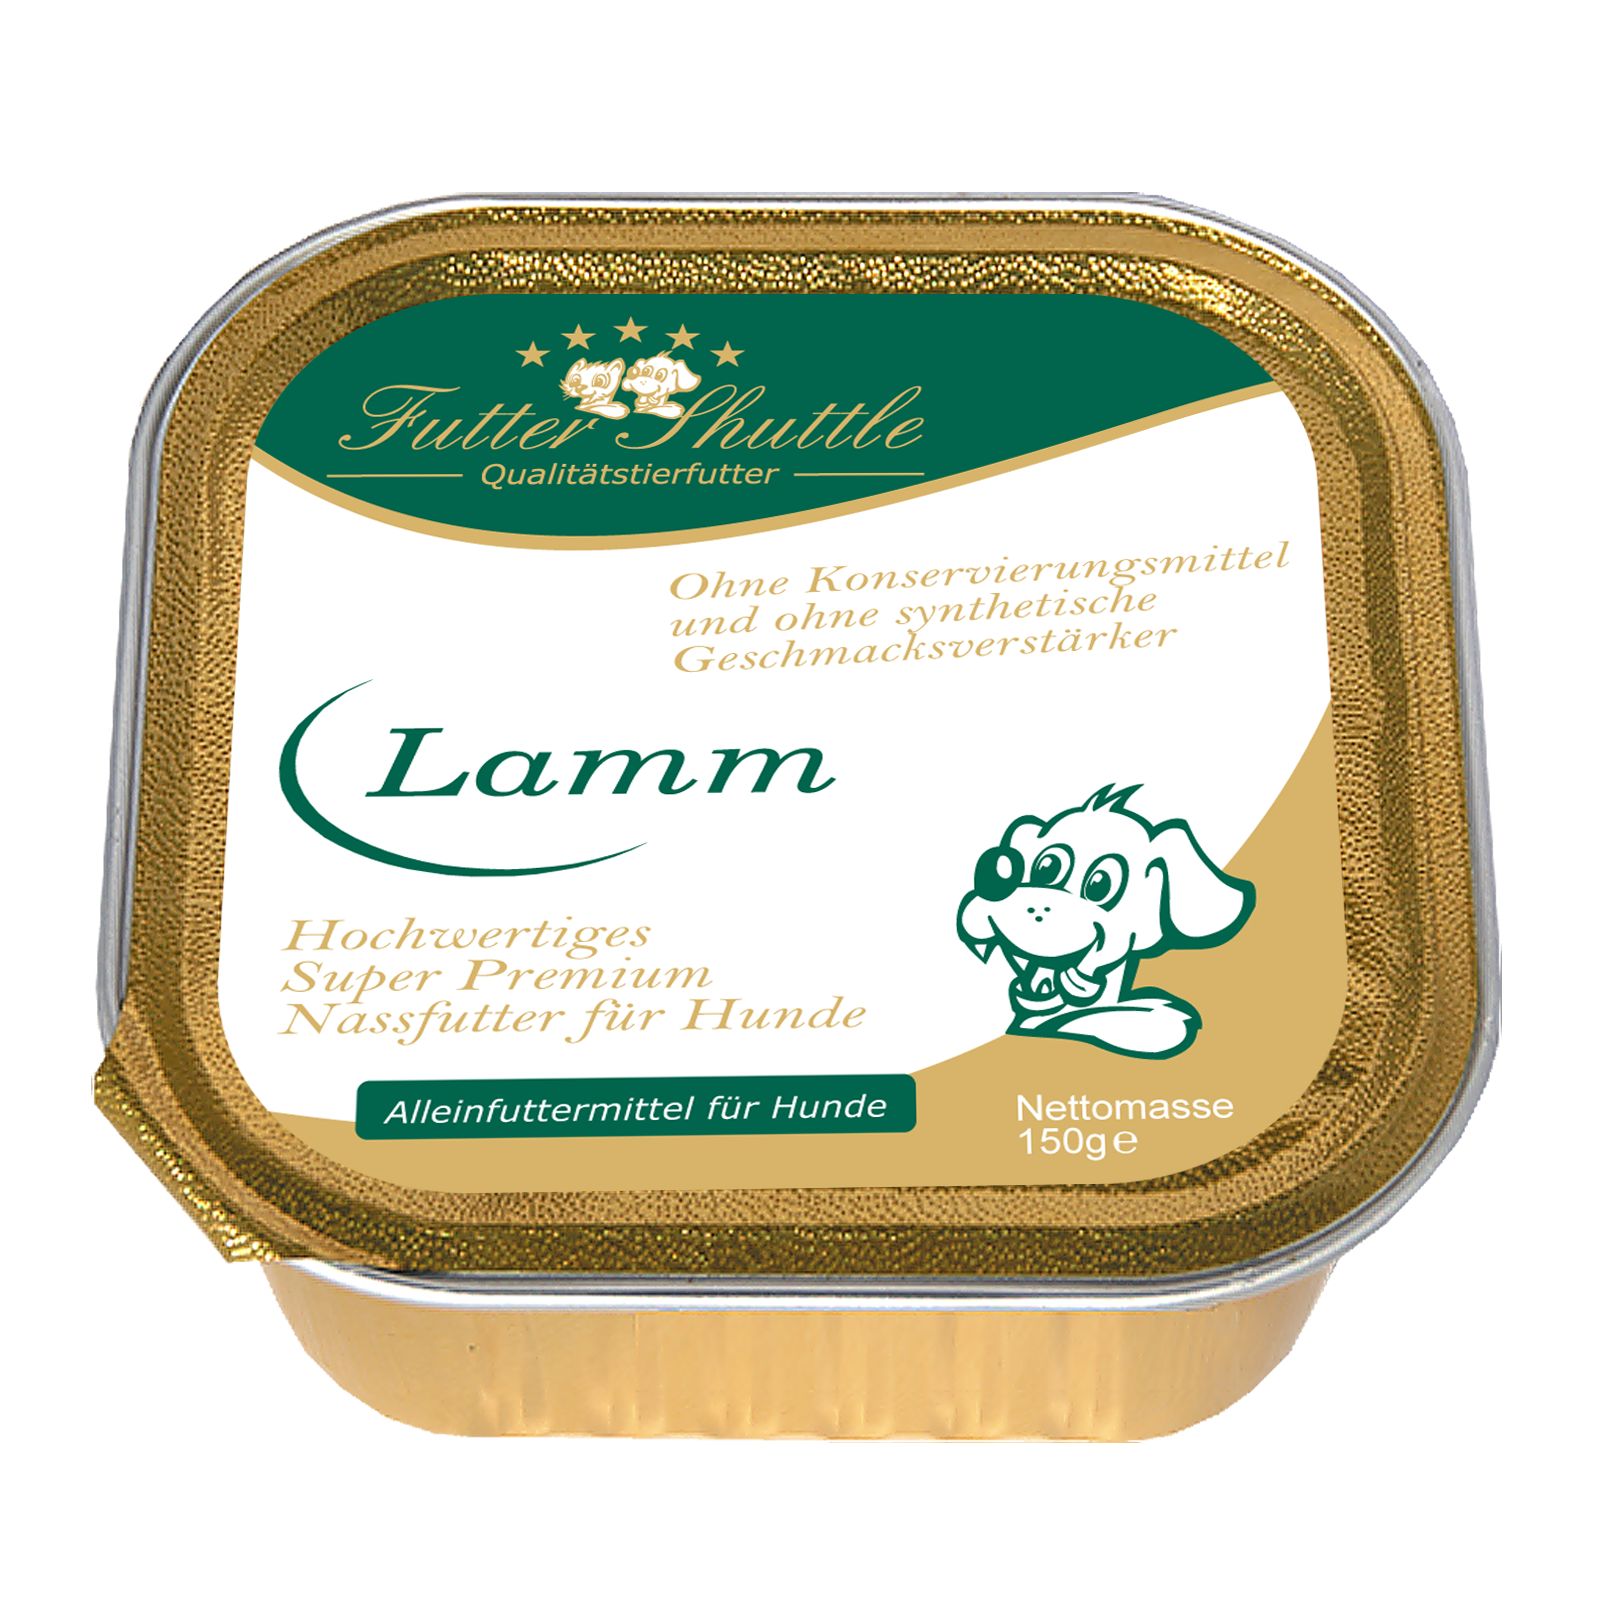 Hochwertiges Nassfutter Lamm für Hunde, in praktischen Portion Schalen